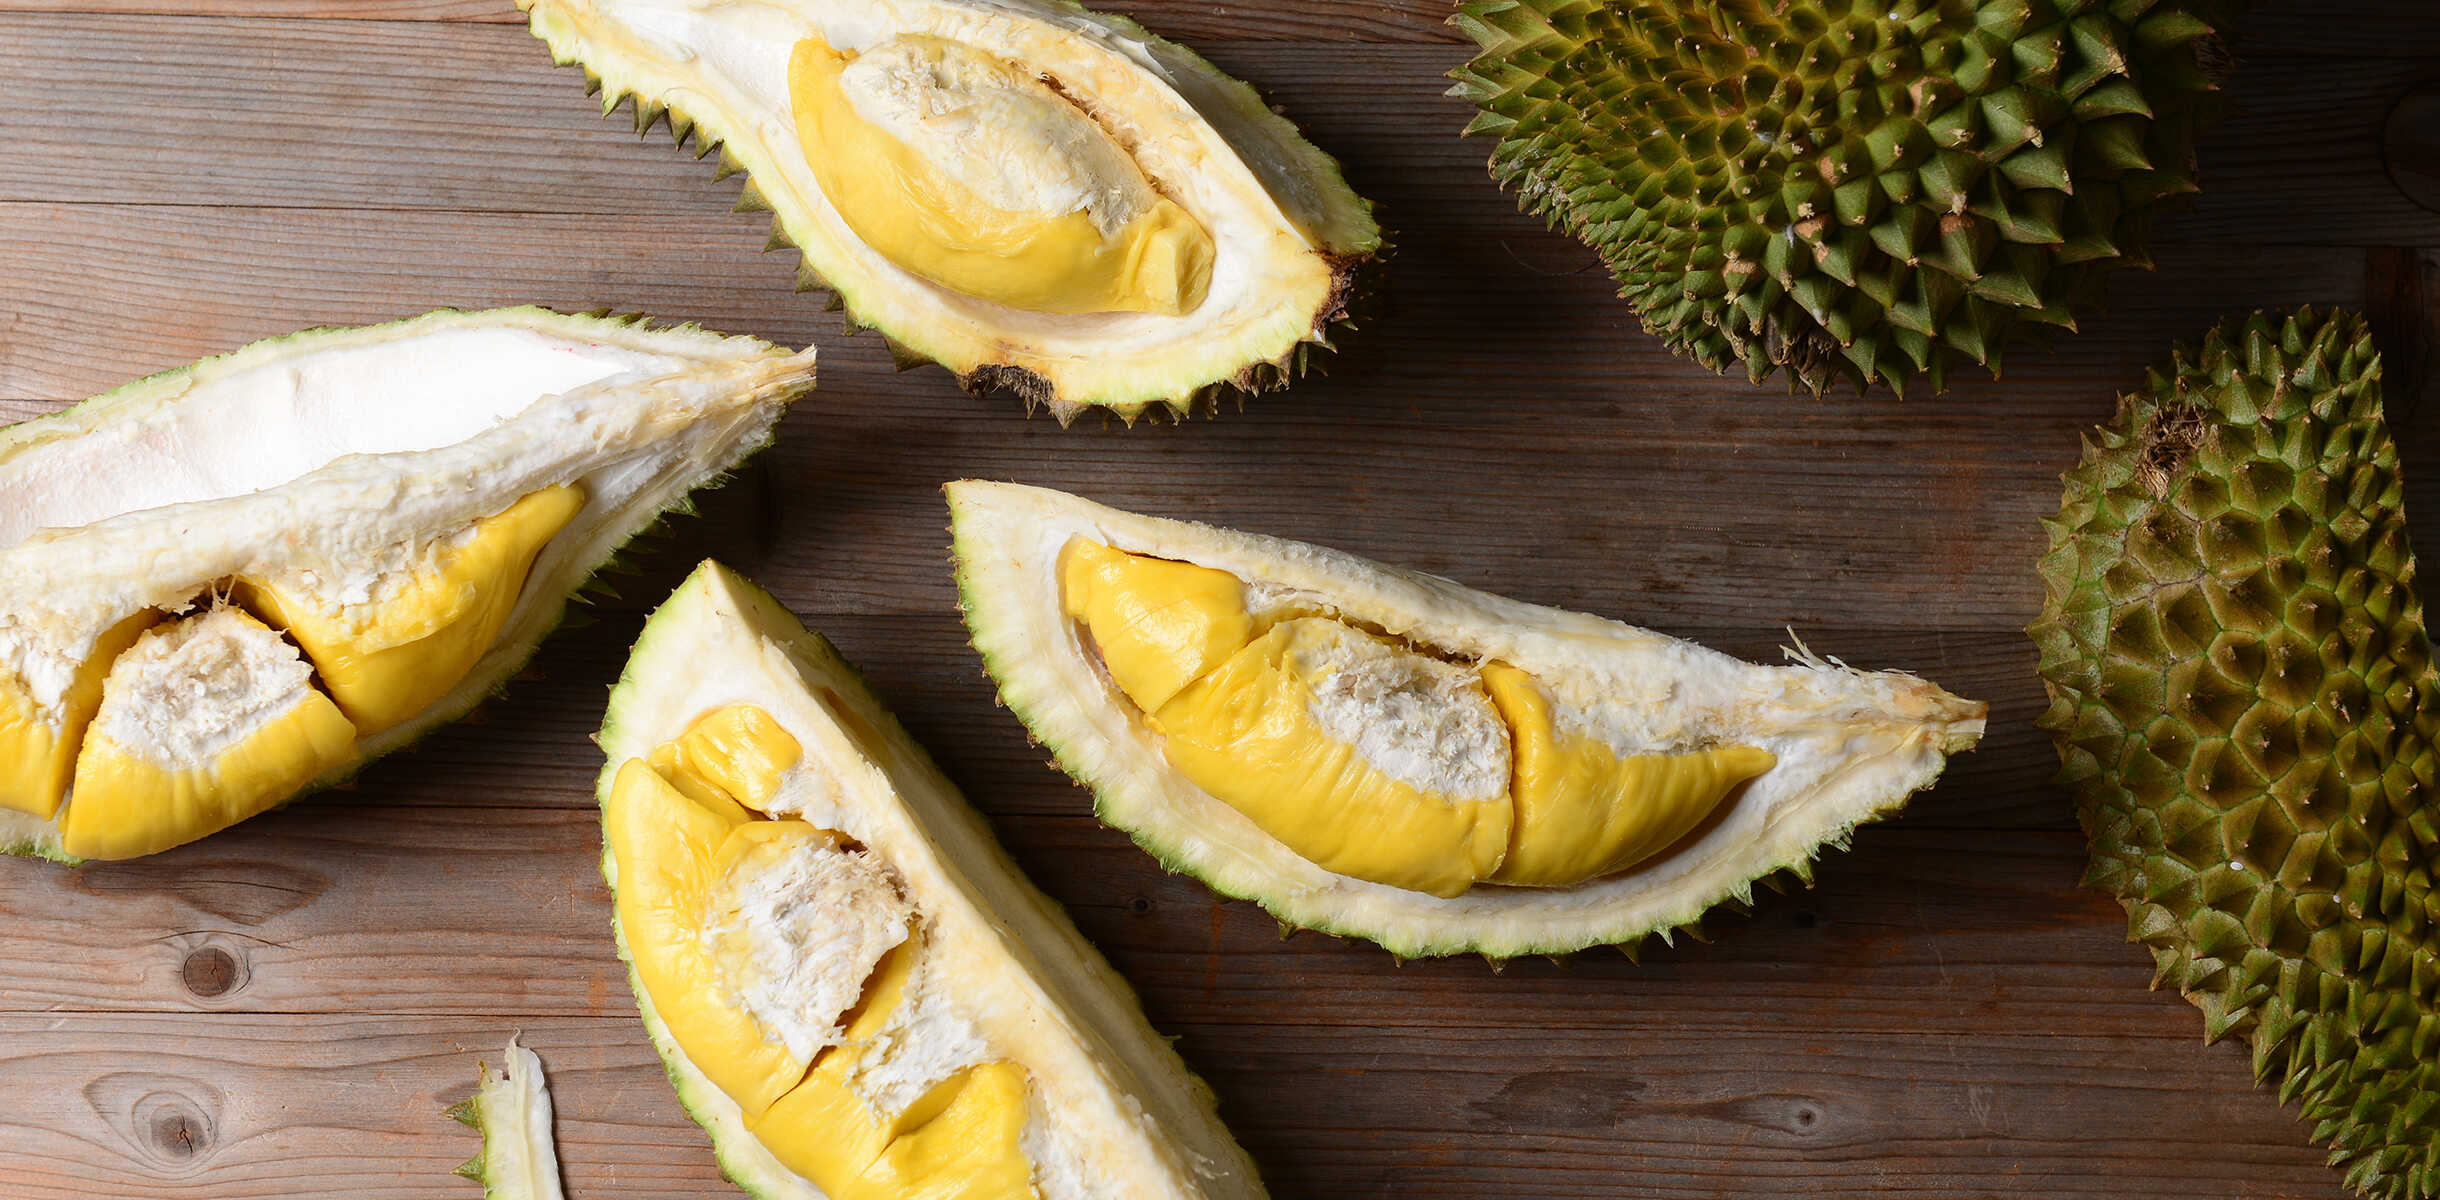 Một số loại trái cây như sầu riêng, mít, nho,... chứa nhiều calo và đường có thể gây mập nếu ăn quá nhiều.